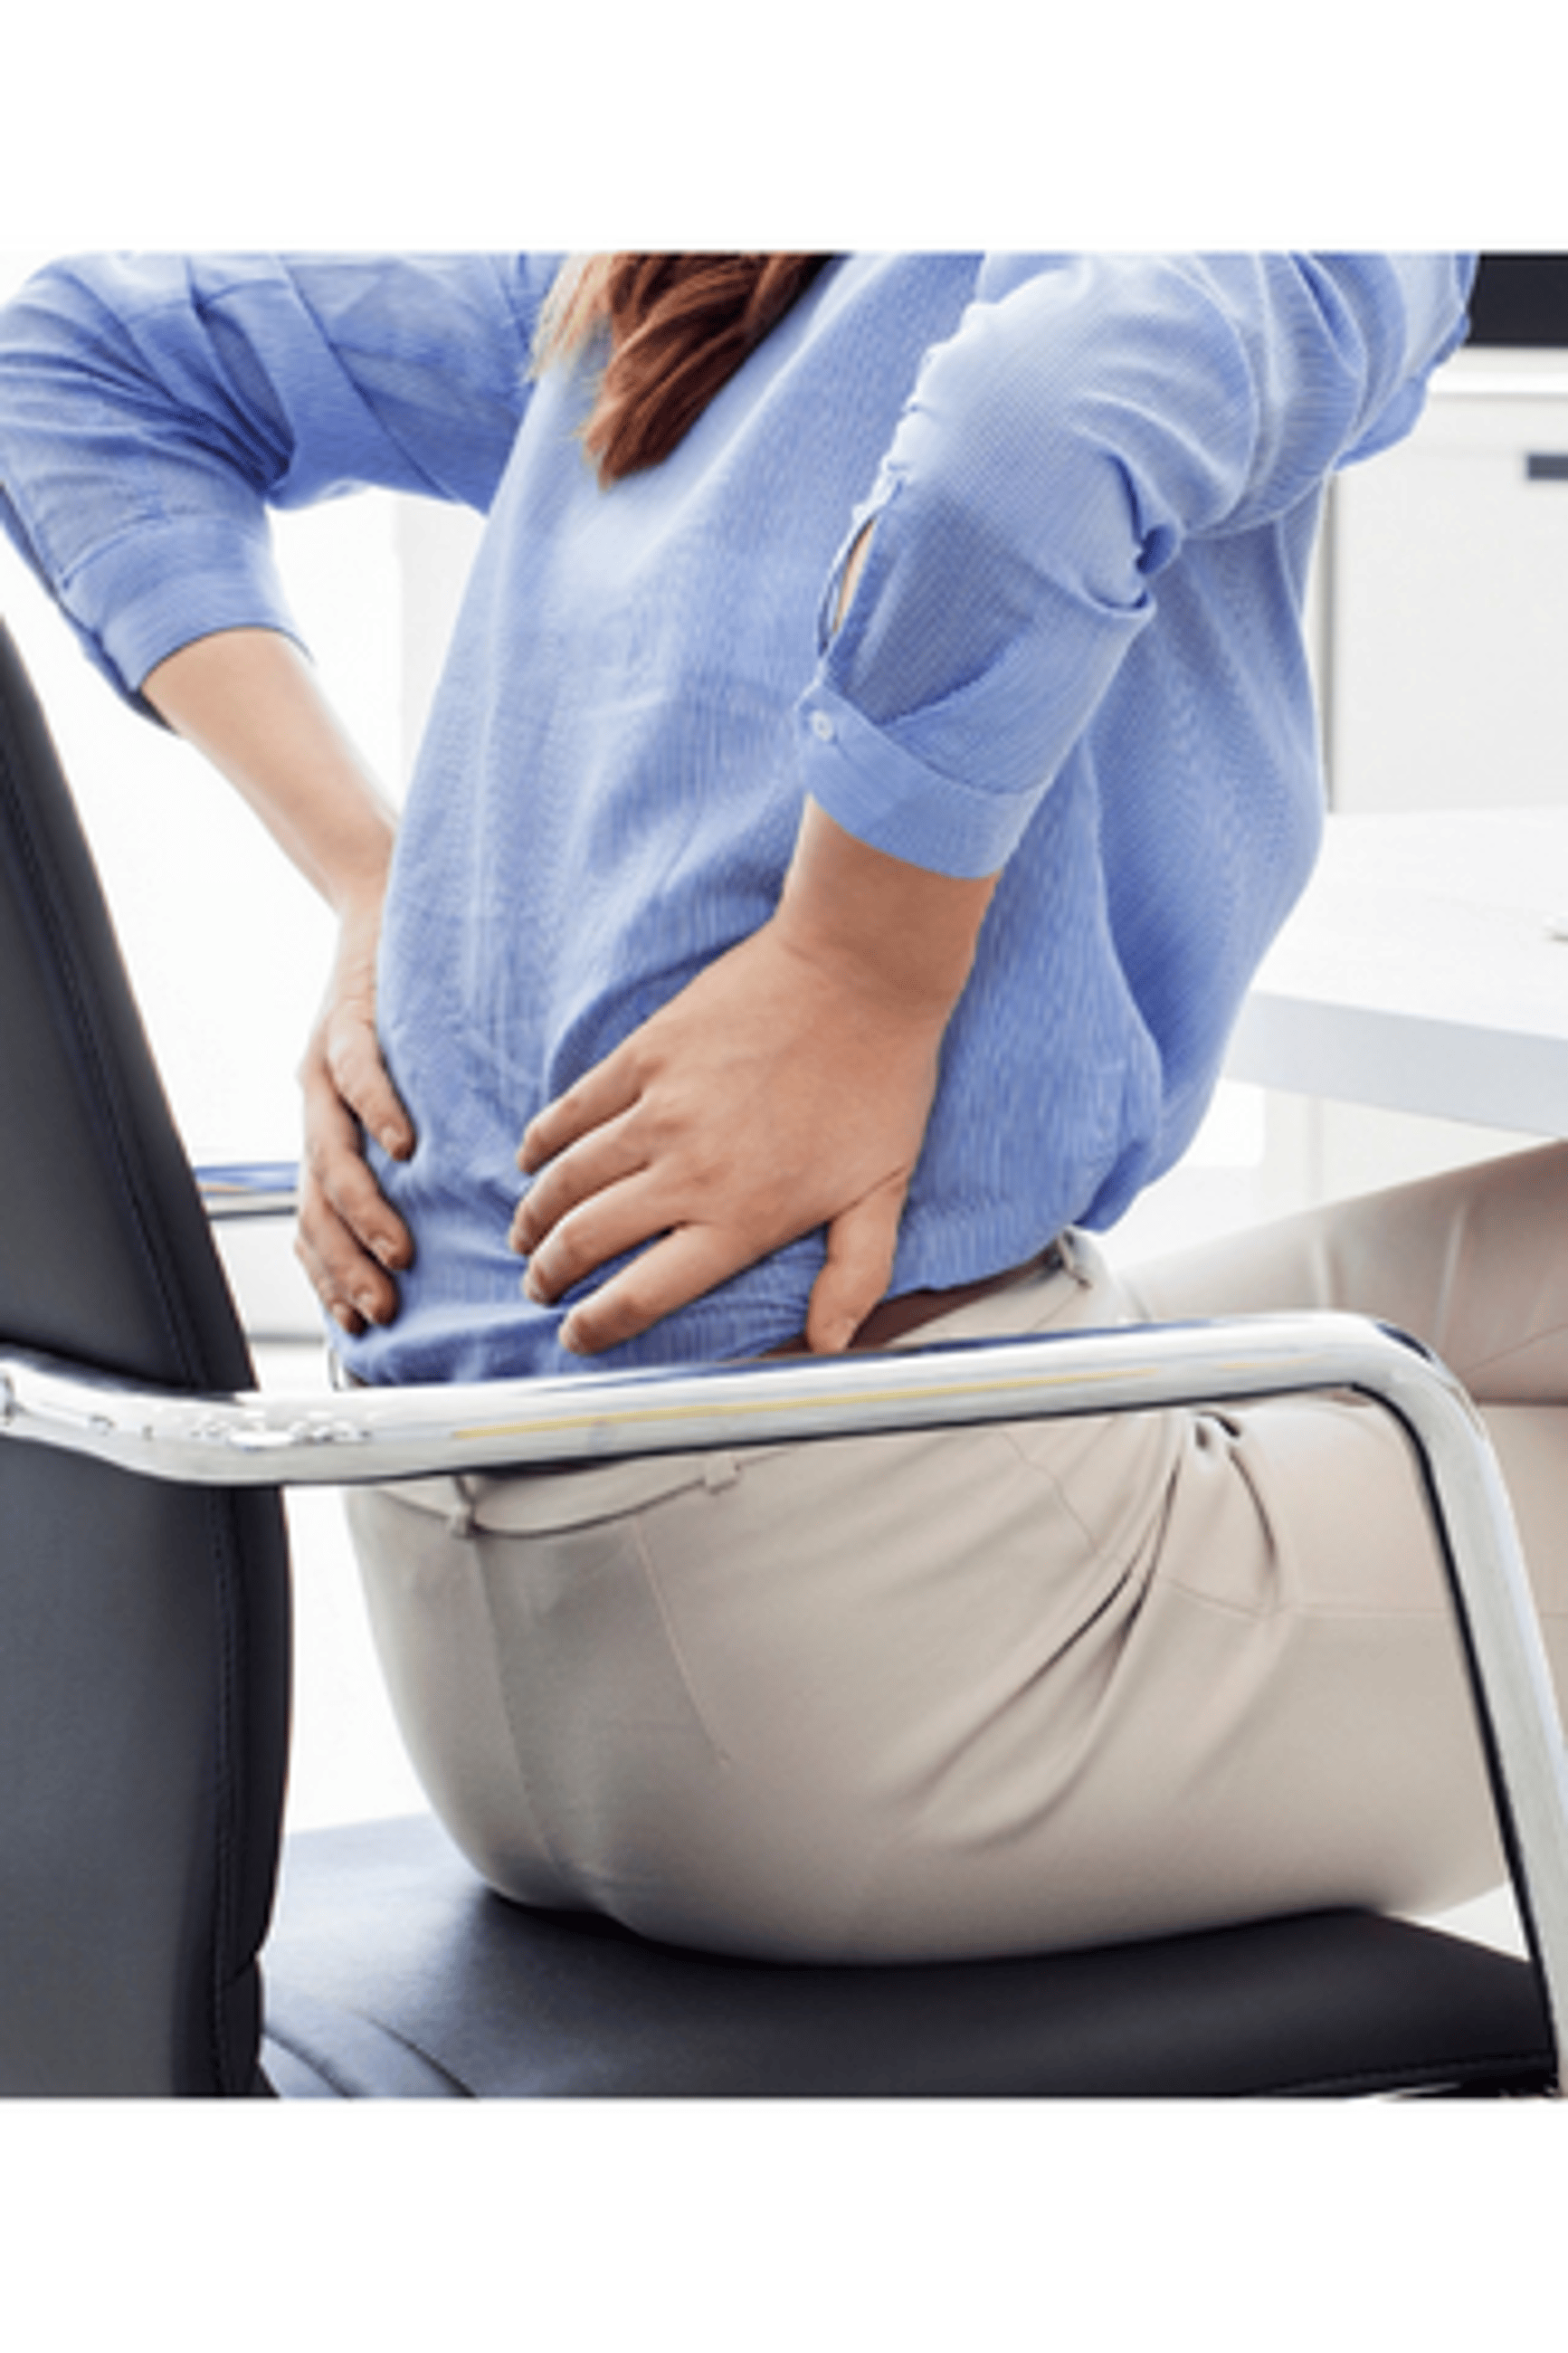 Ból dolnego odcinka kręgosłupa spowodowany siedzącym trybem życia